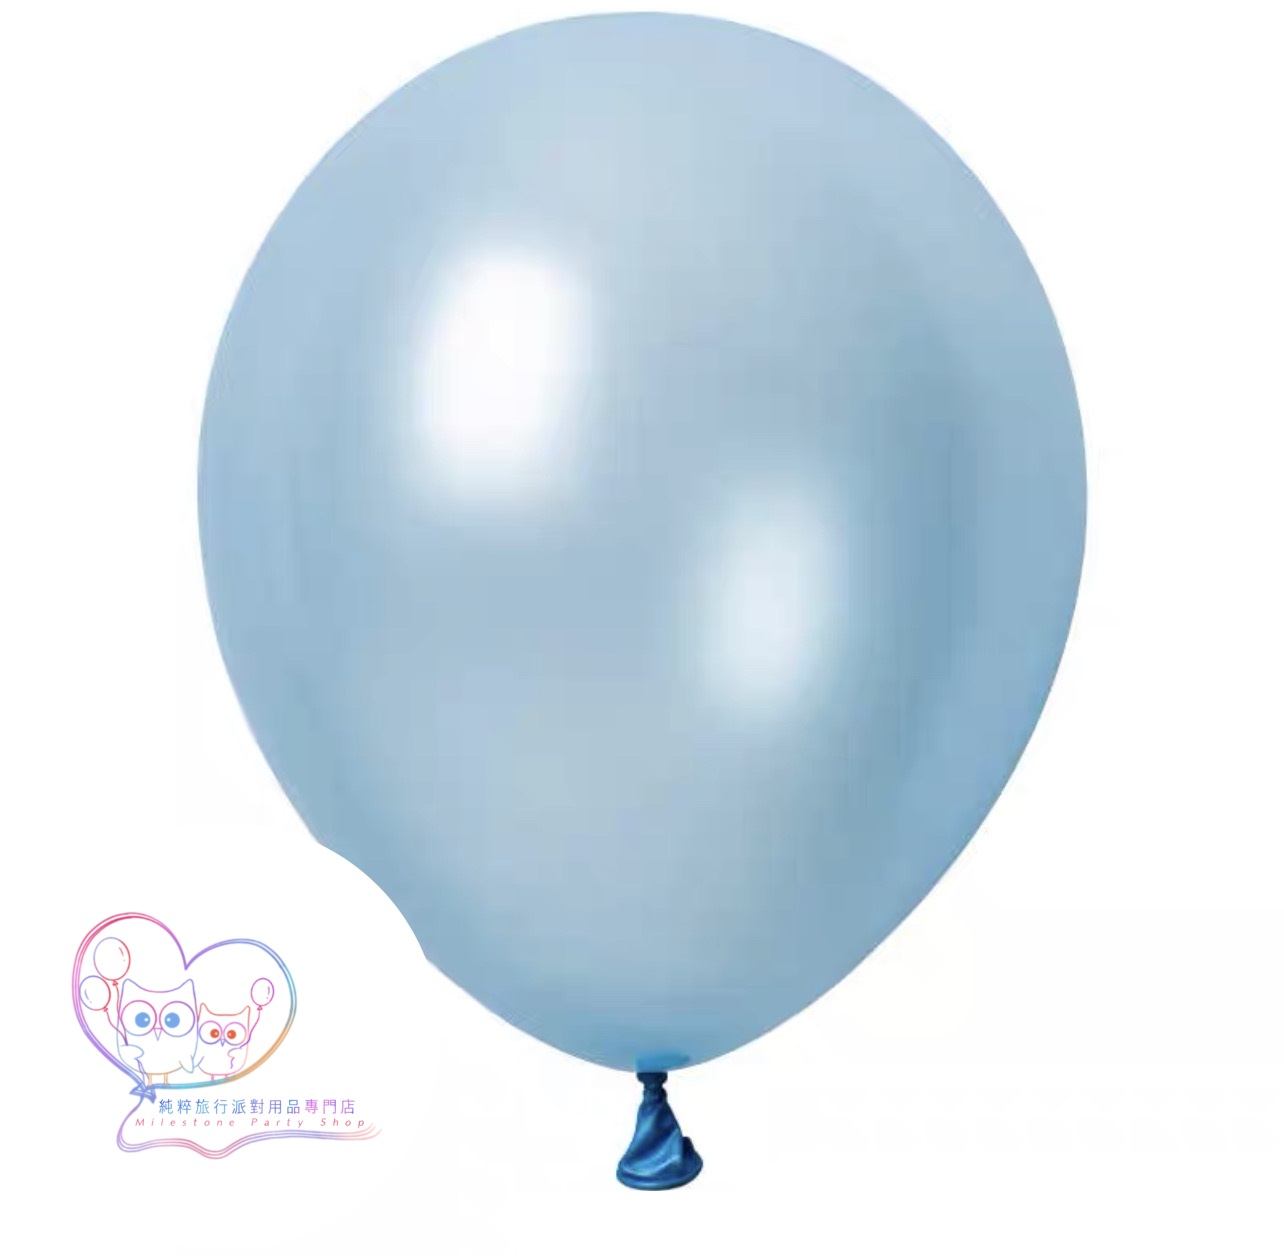 5吋氣球 (珠光淺藍色) (1pc) 5LBC6